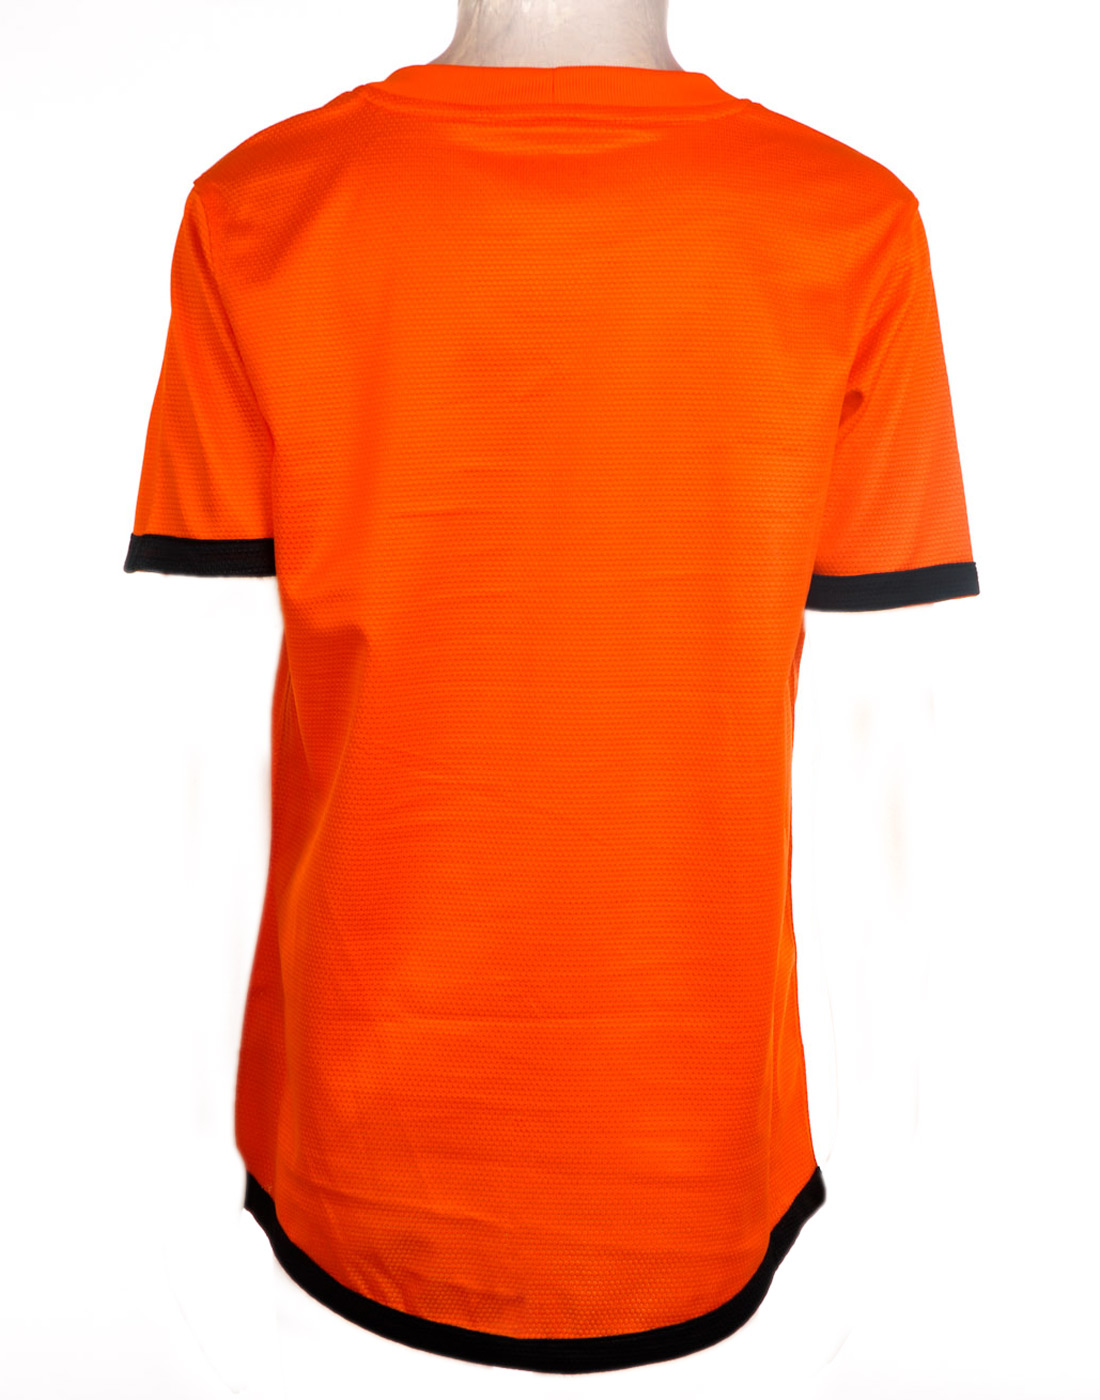 Hình nền Holland jersey (12) - hình nền bóng đá - hình nền cầu thủ - hình nền đội bóng